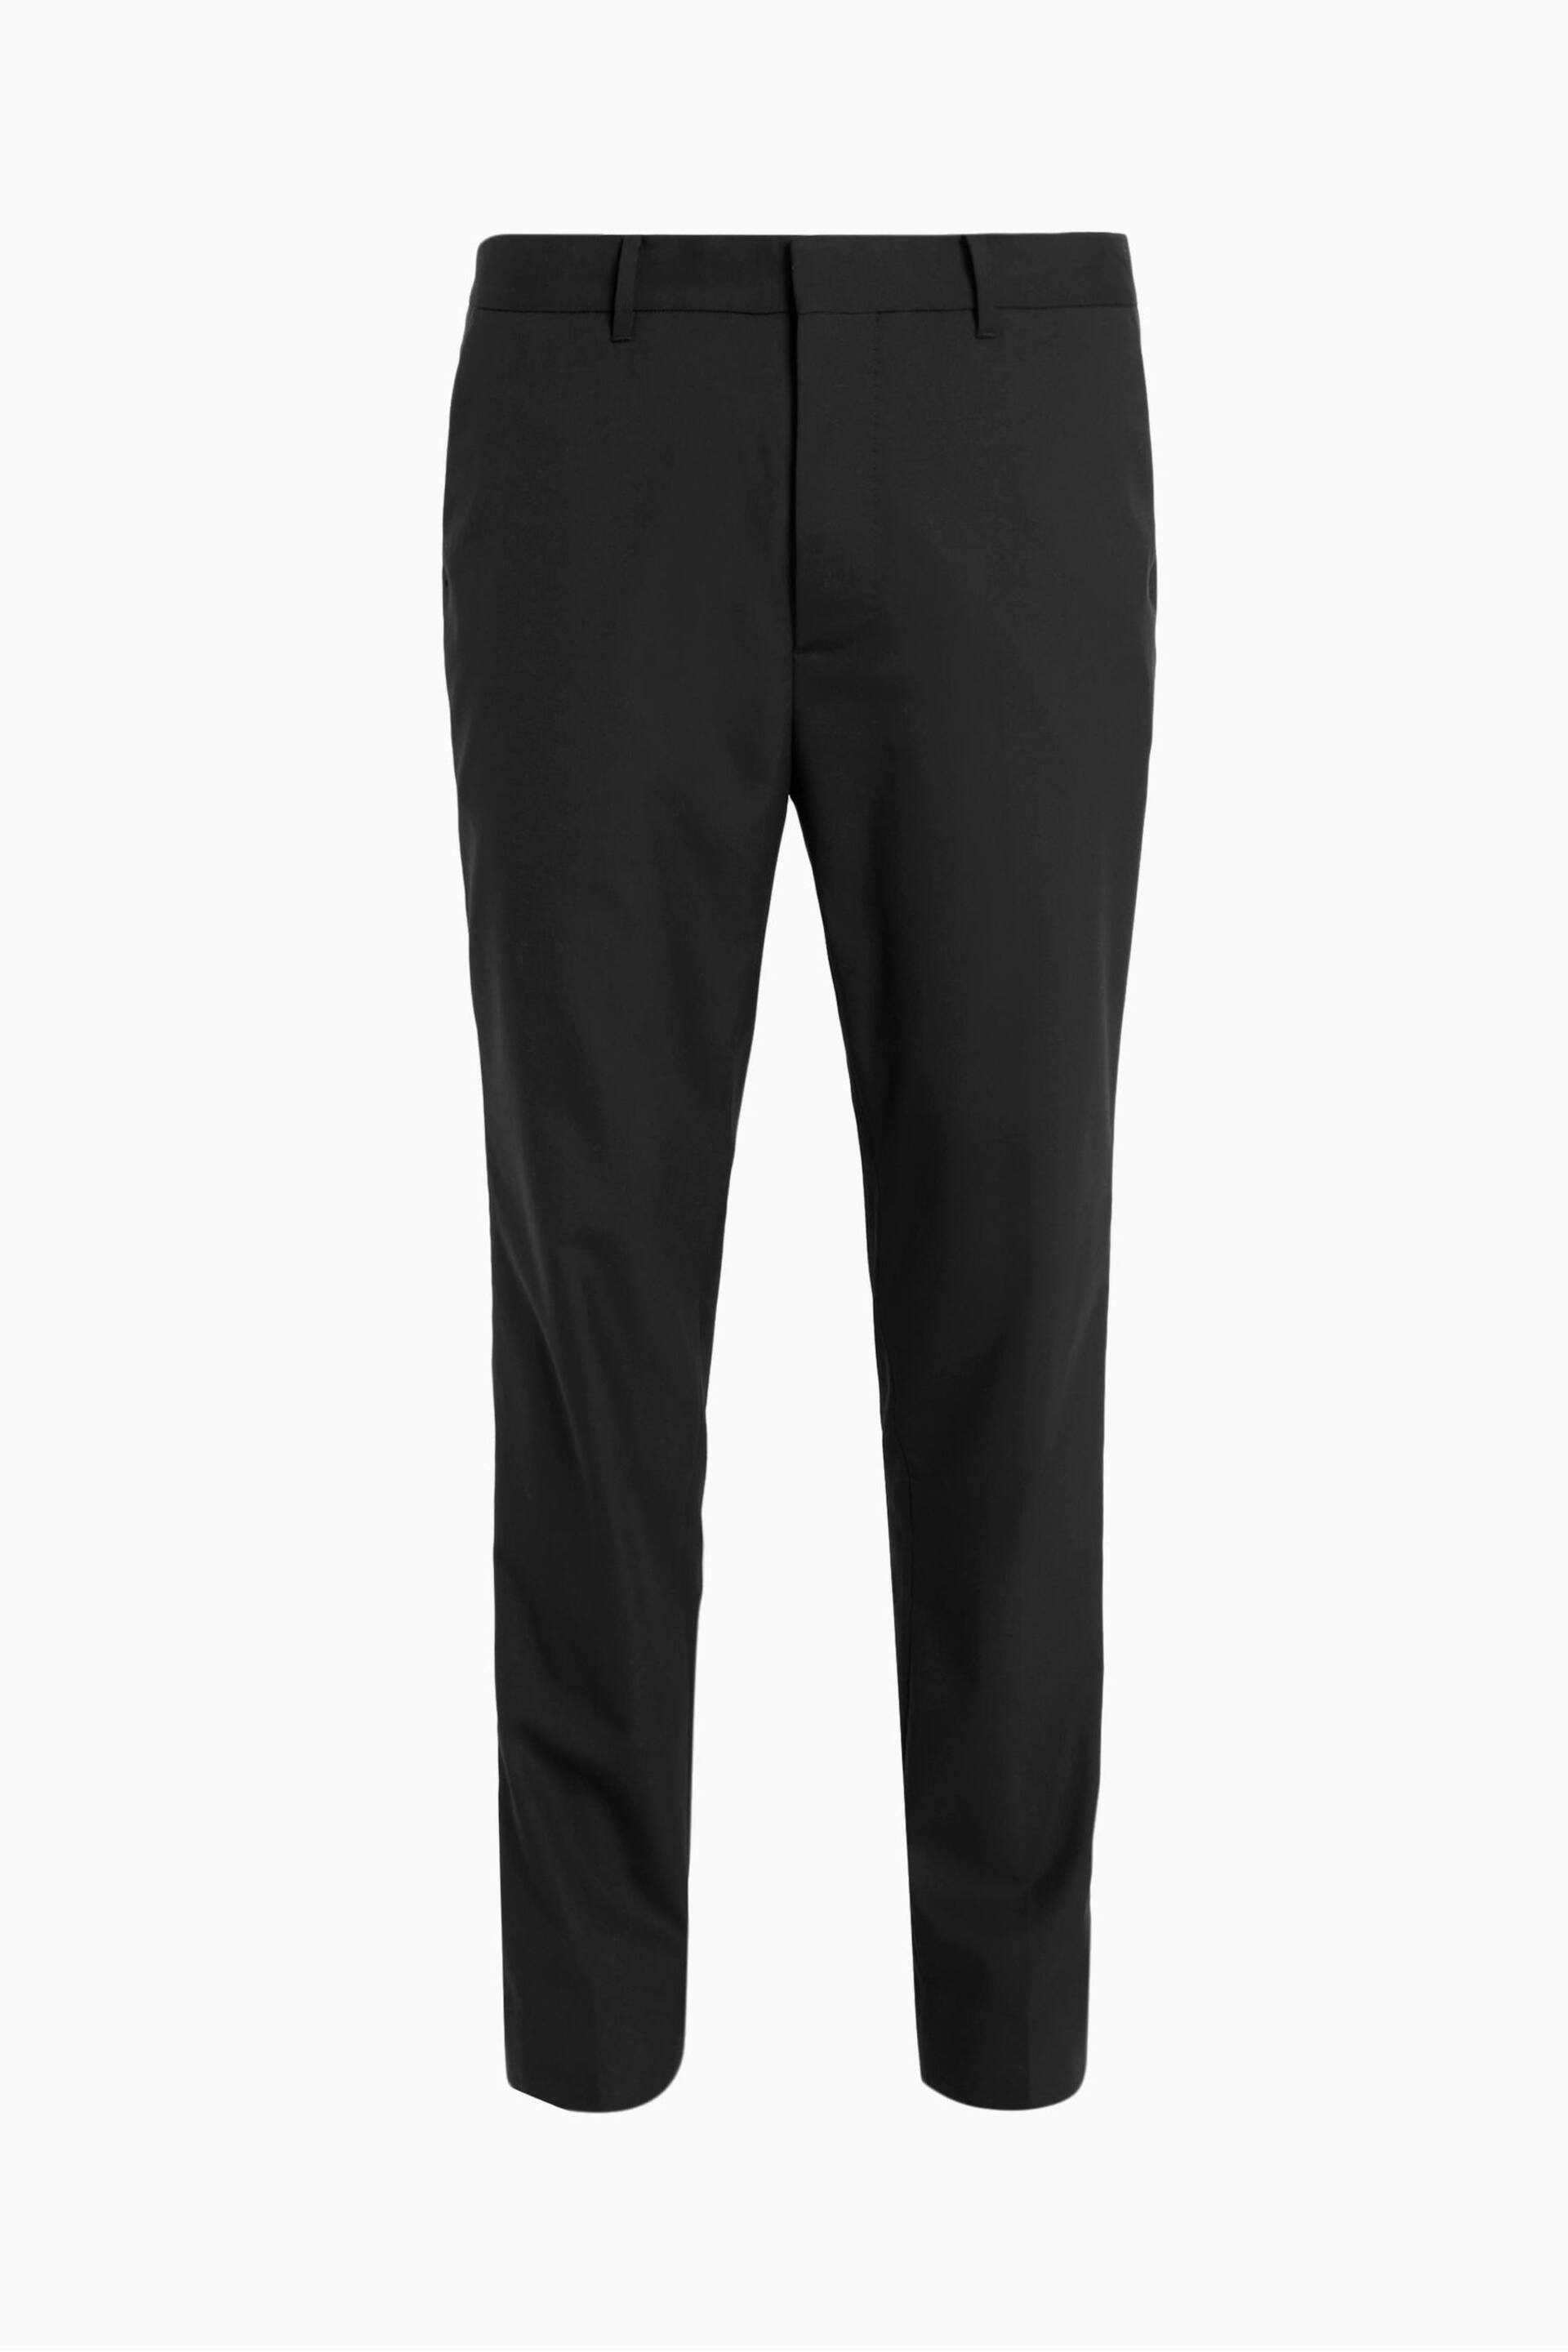 AllSaints Black Dima Trousers - Image 7 of 7